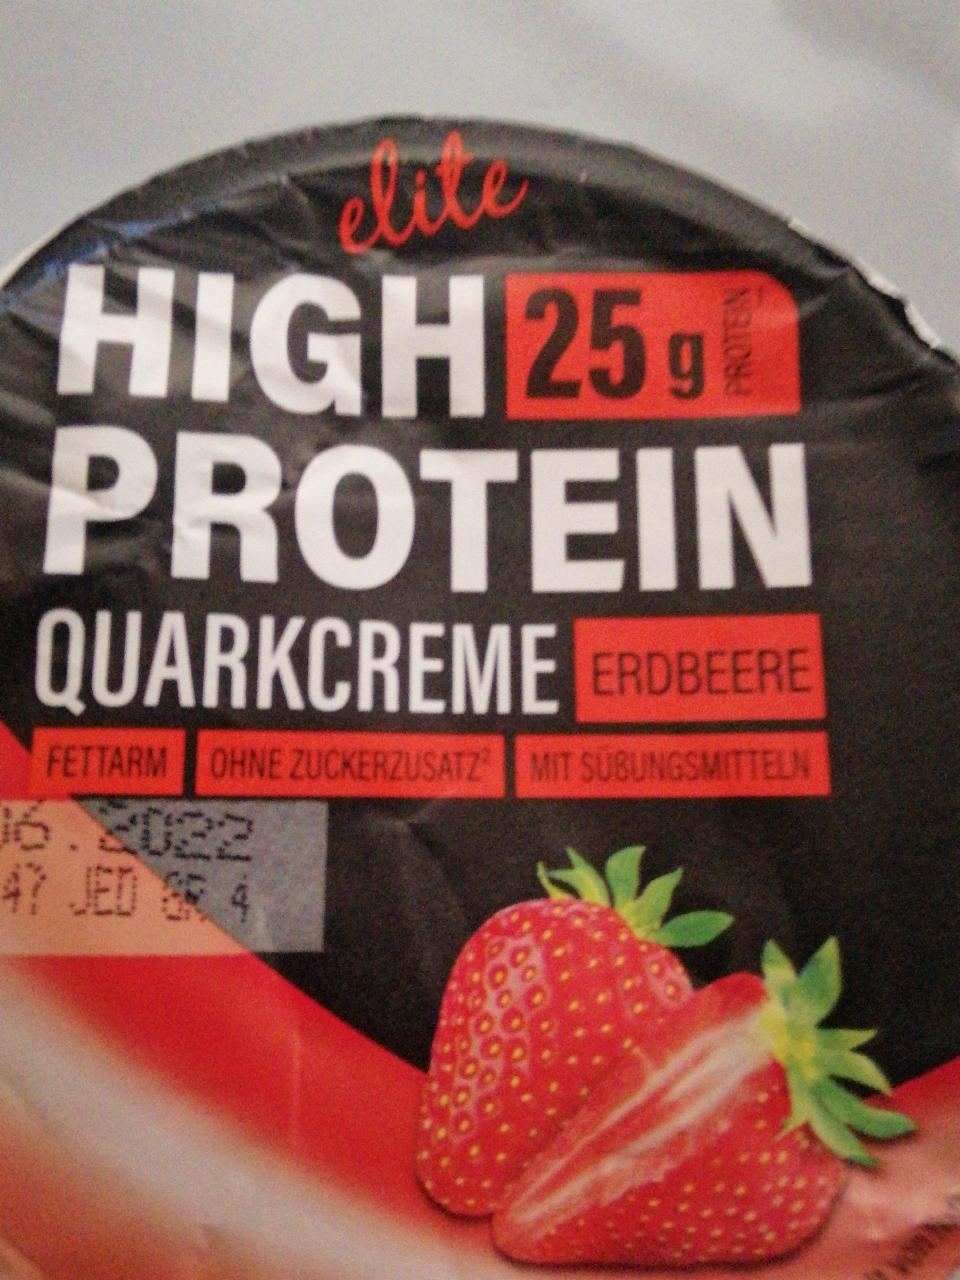 Фото - Протеиновый йогурт High Protein Quarkcreme Erdbeere Elite